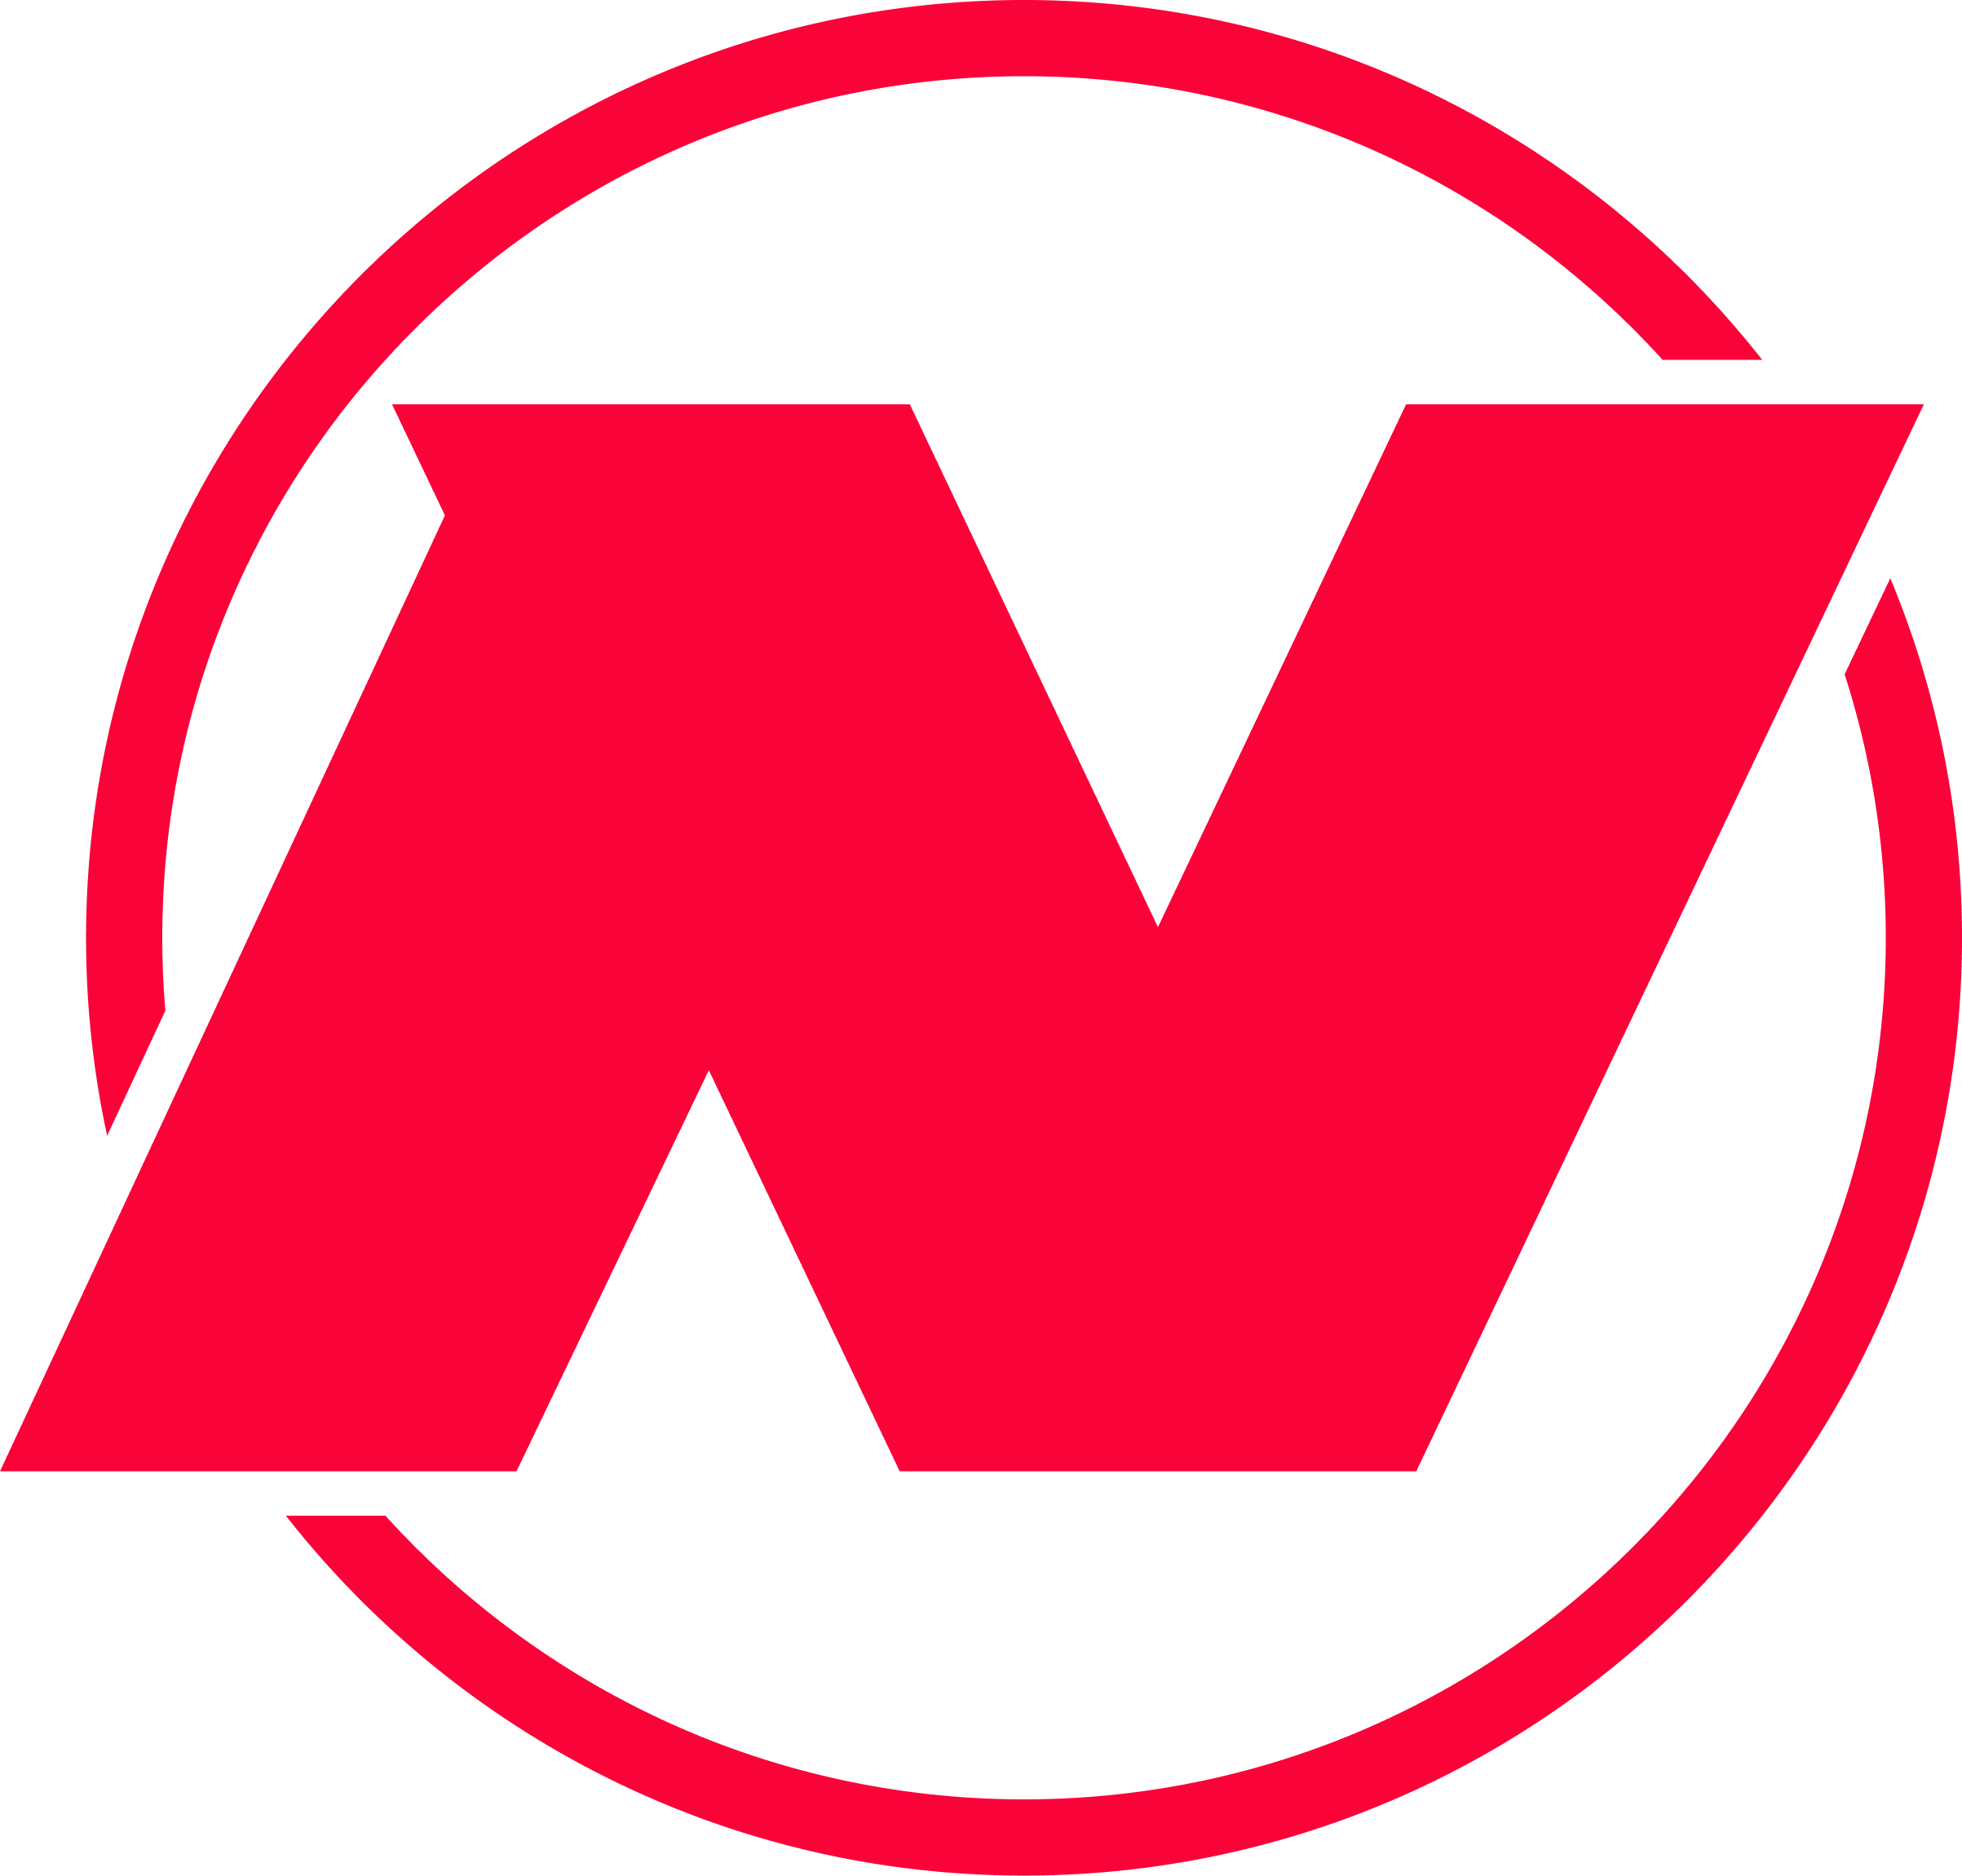 Nitro League logo